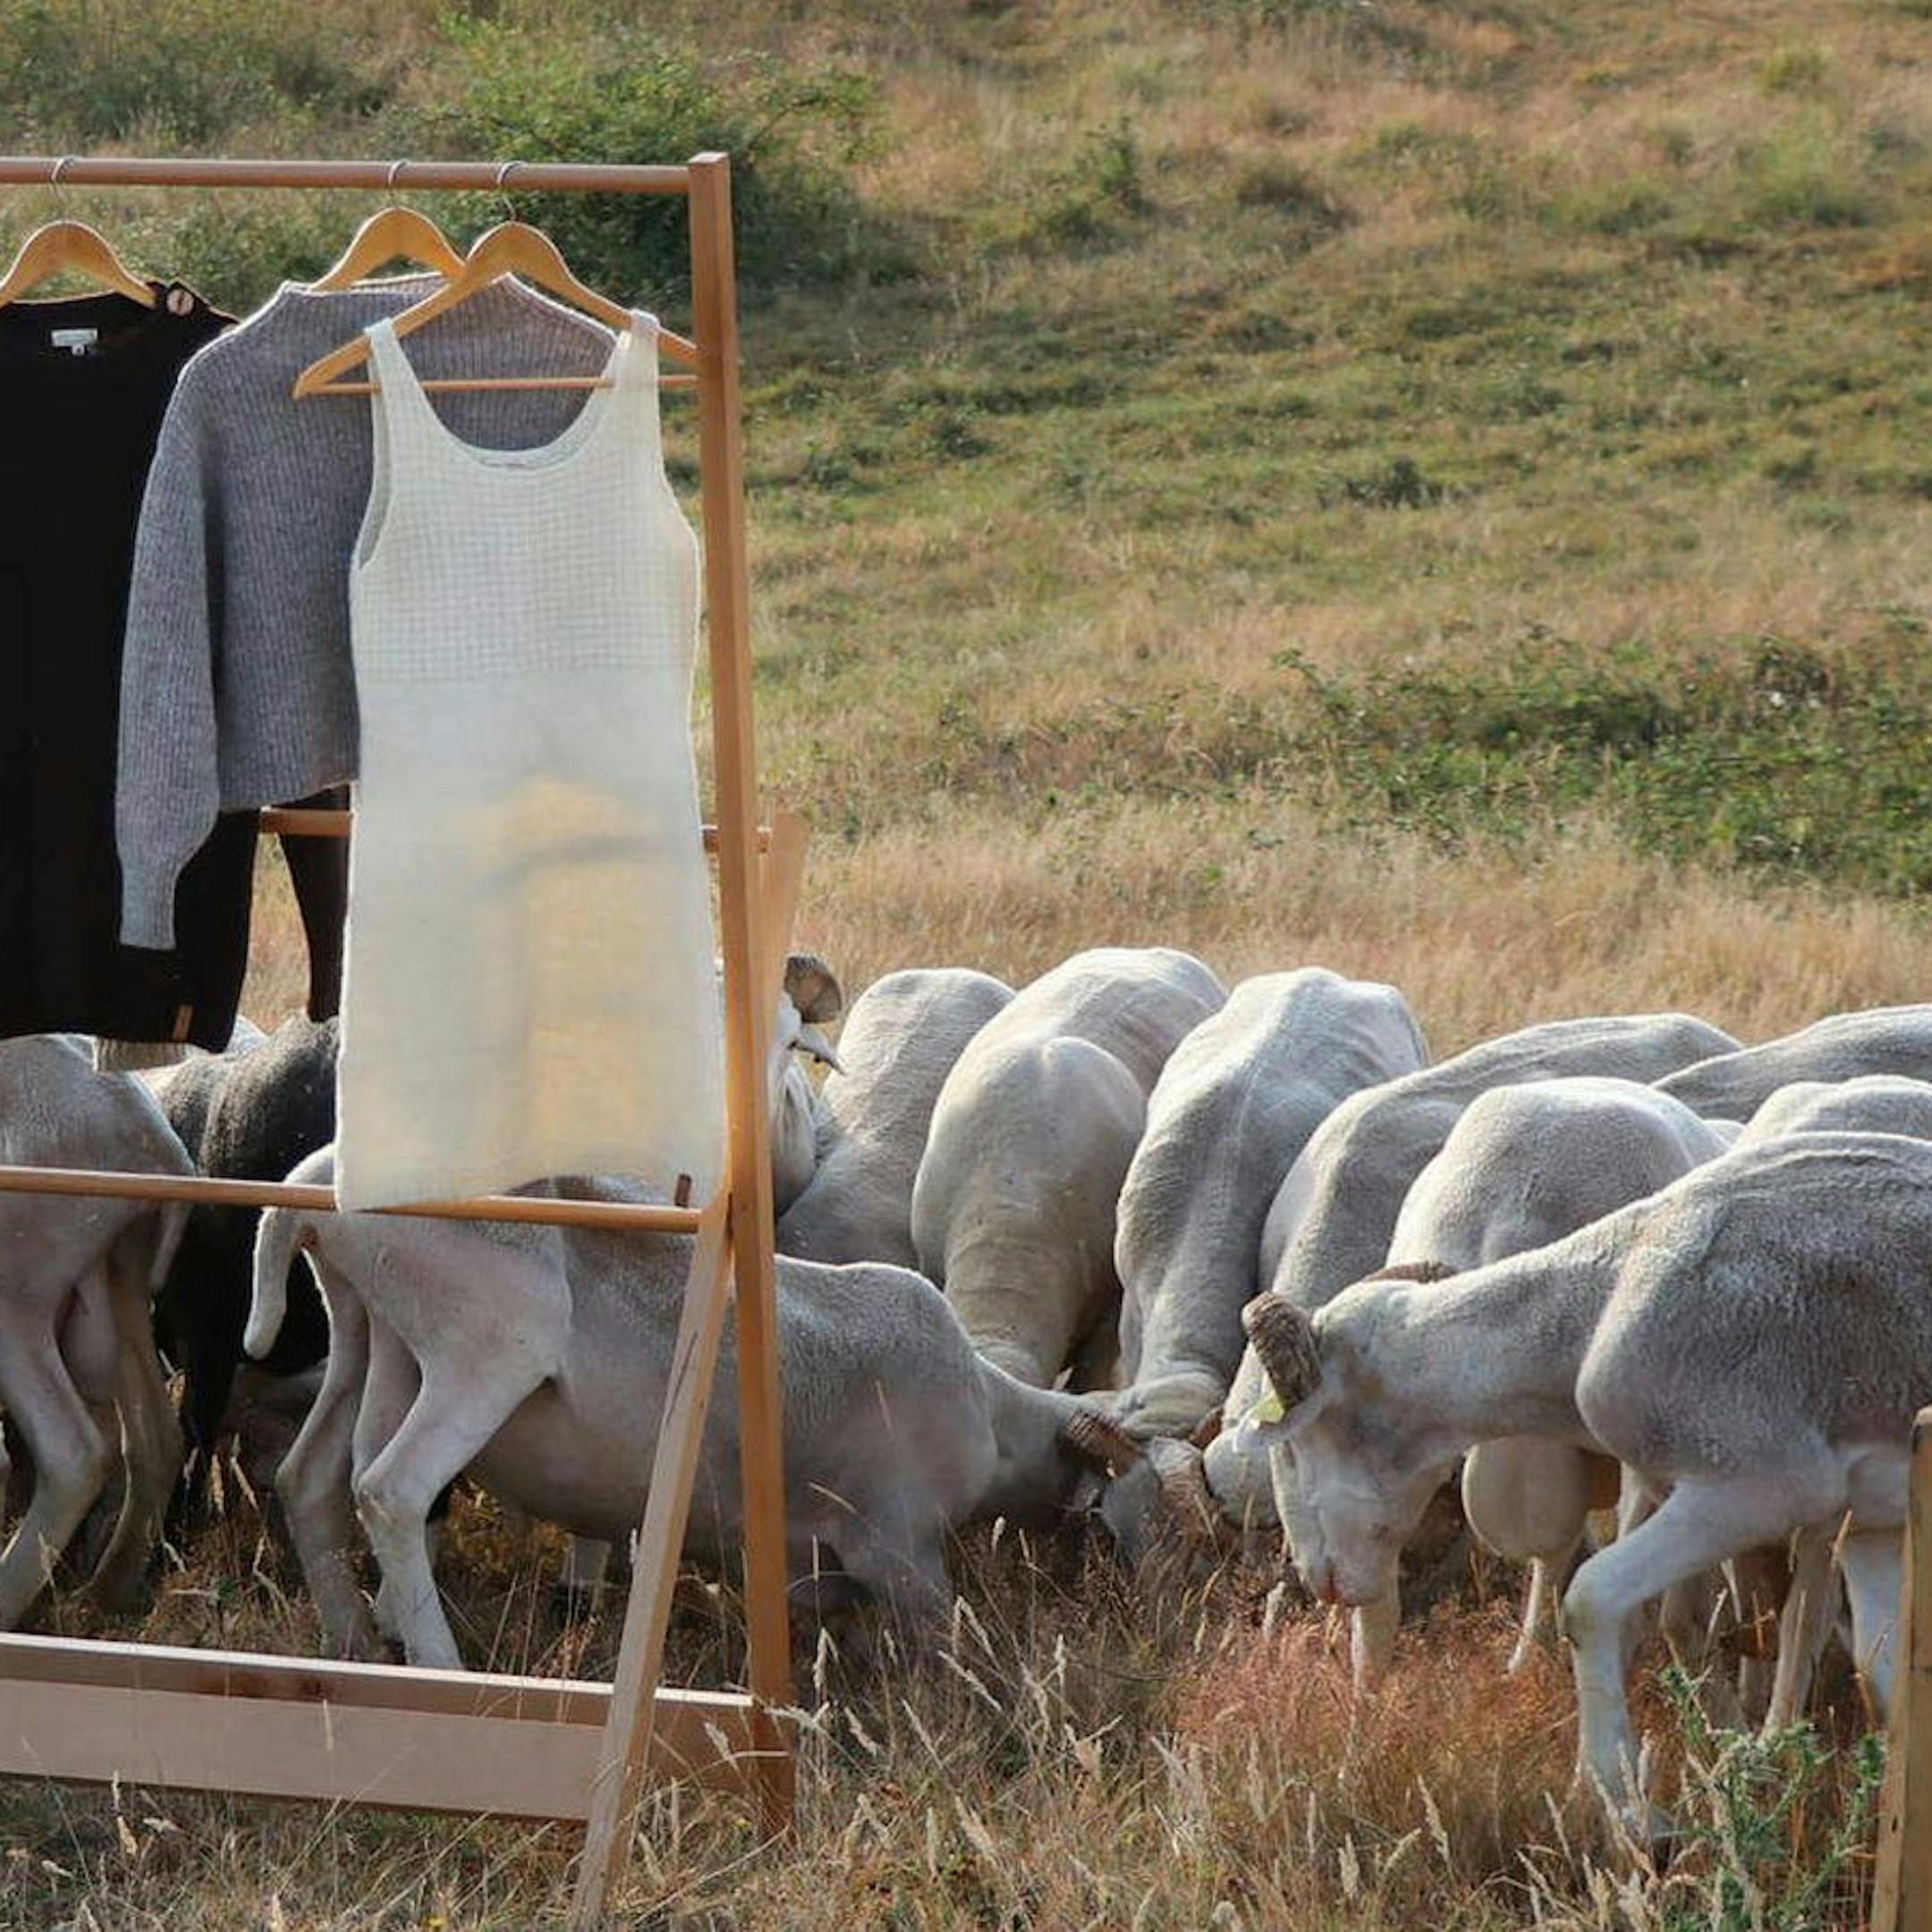 Portant avec des vêtements en laine dans un champ de moutons